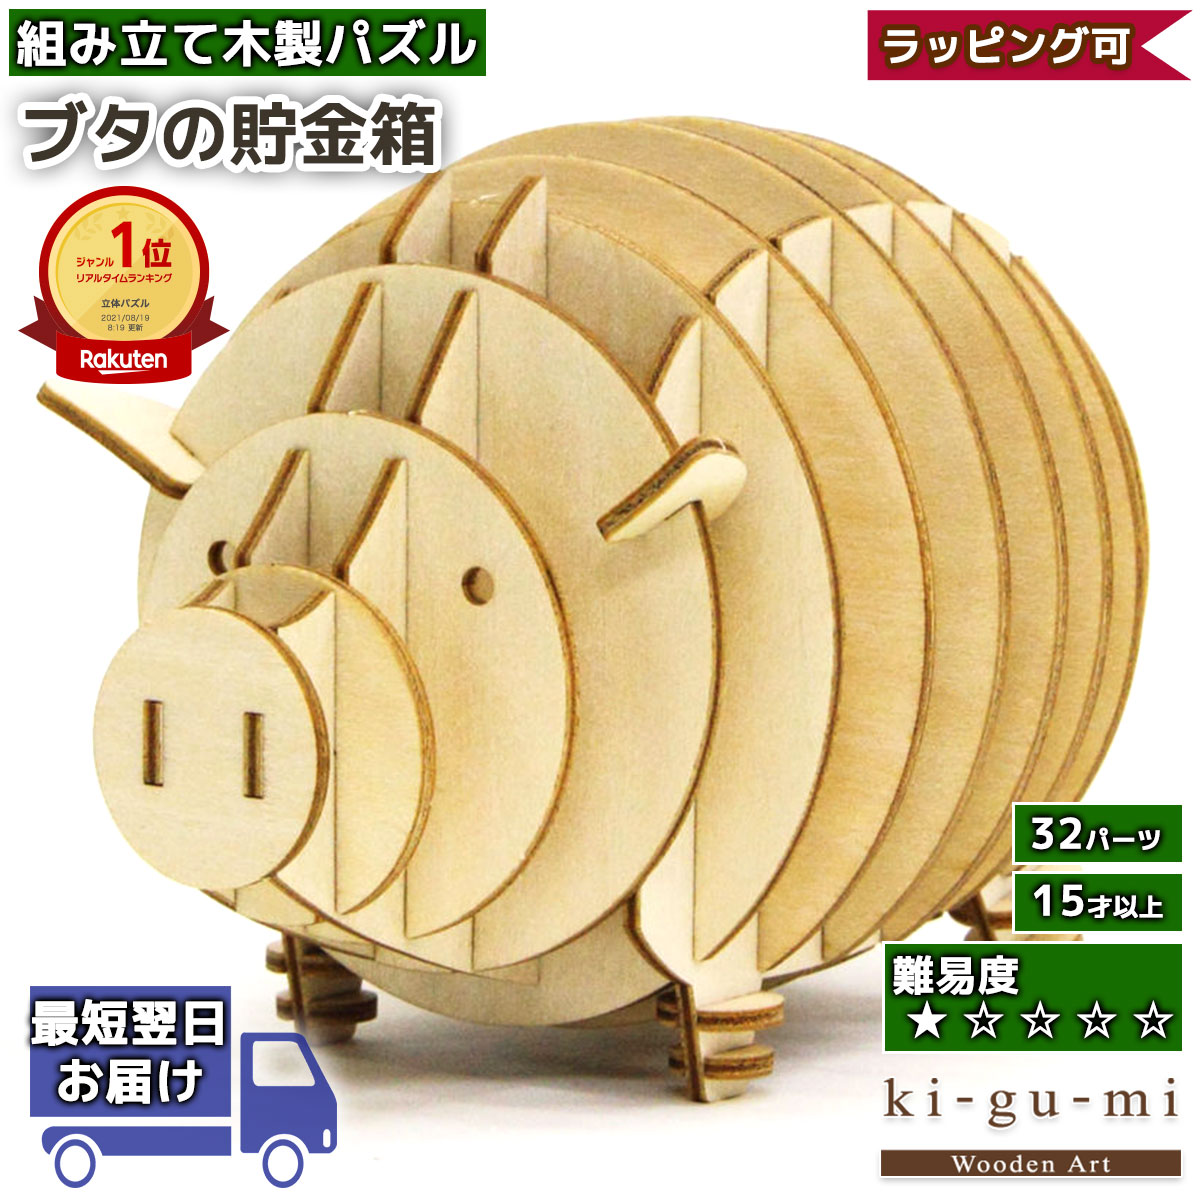 木製 工作キット ブタ 貯金箱 kigumi エーゾーン ウッドパズル 立体パズル 木製 大人 手作り キット |